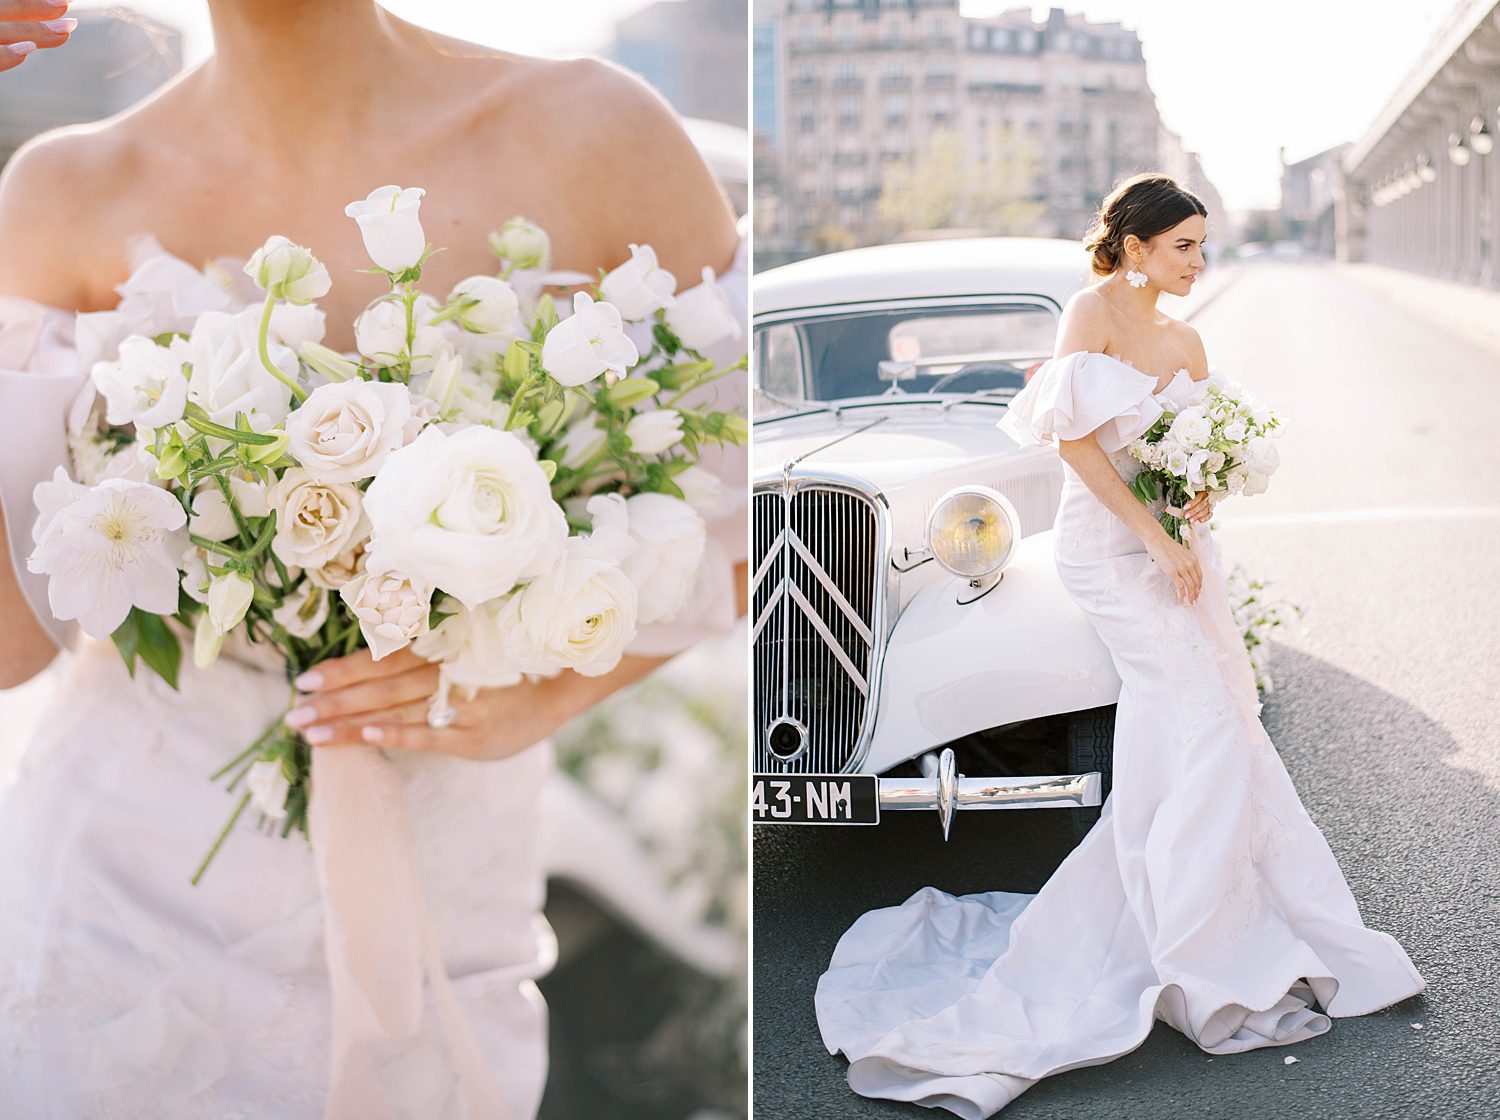 Parisian bride leans against classic white car during portraits